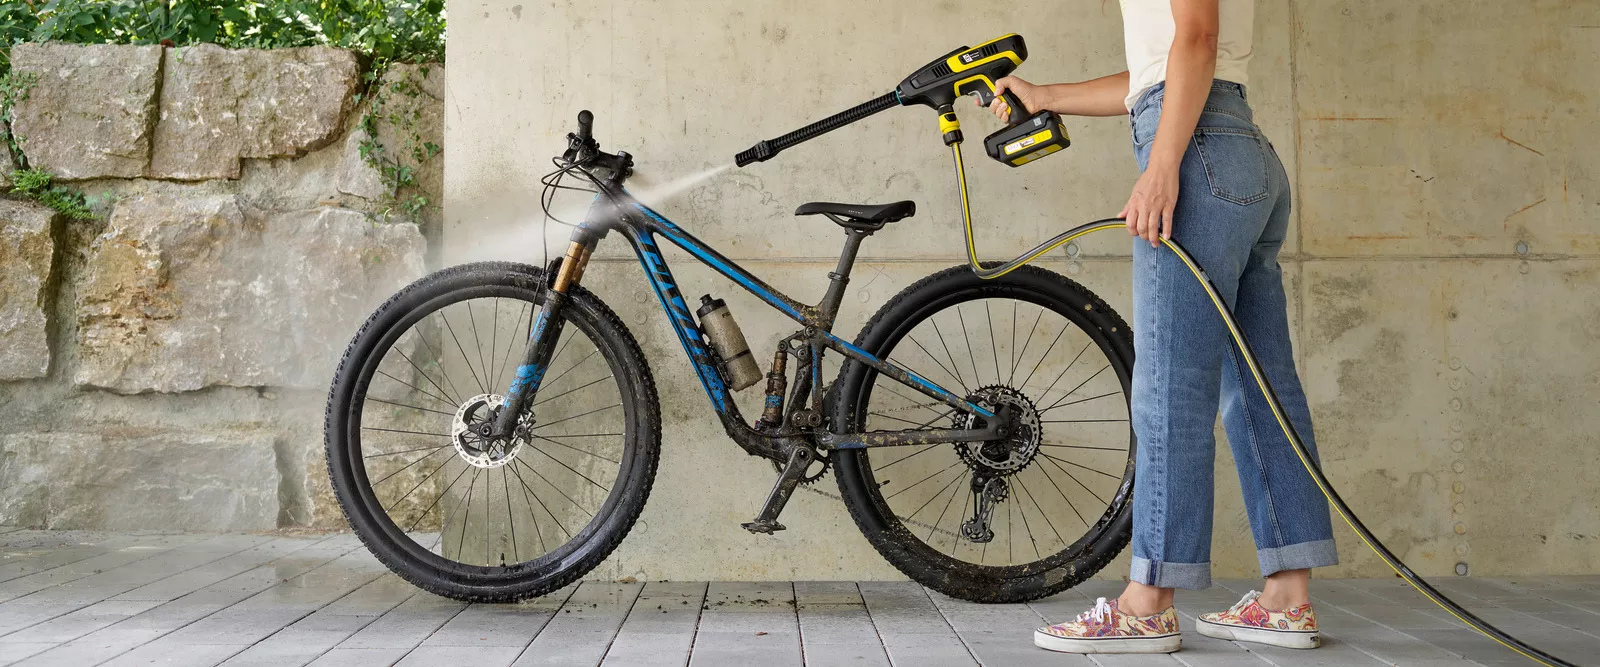 Limpiador de cadena de bicicleta ciclismo Bike cepillos fregadoras